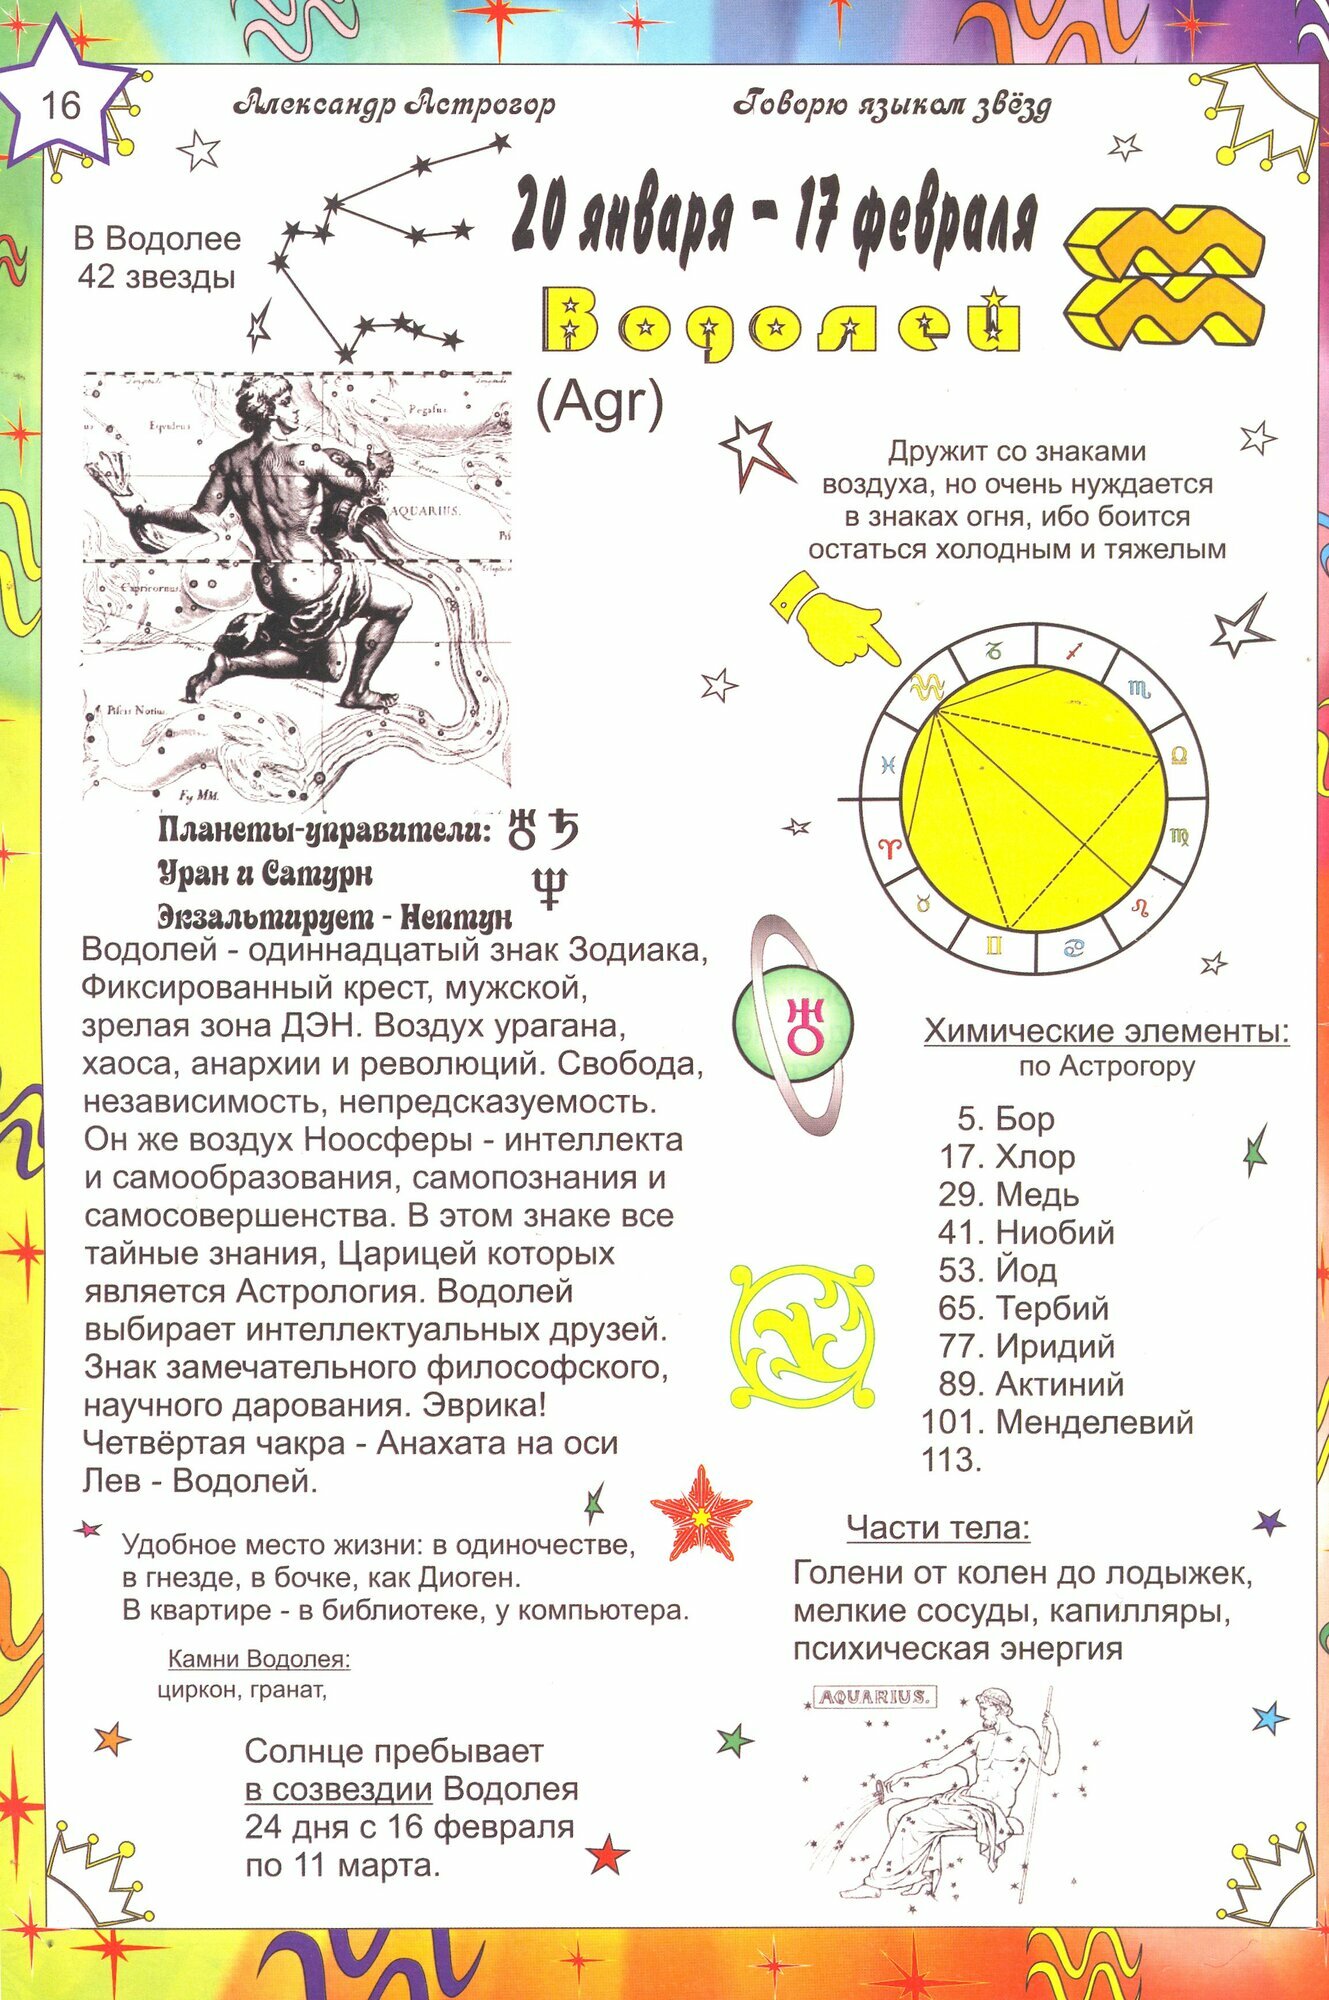 Астрология в схемах и таблицах - фото №9